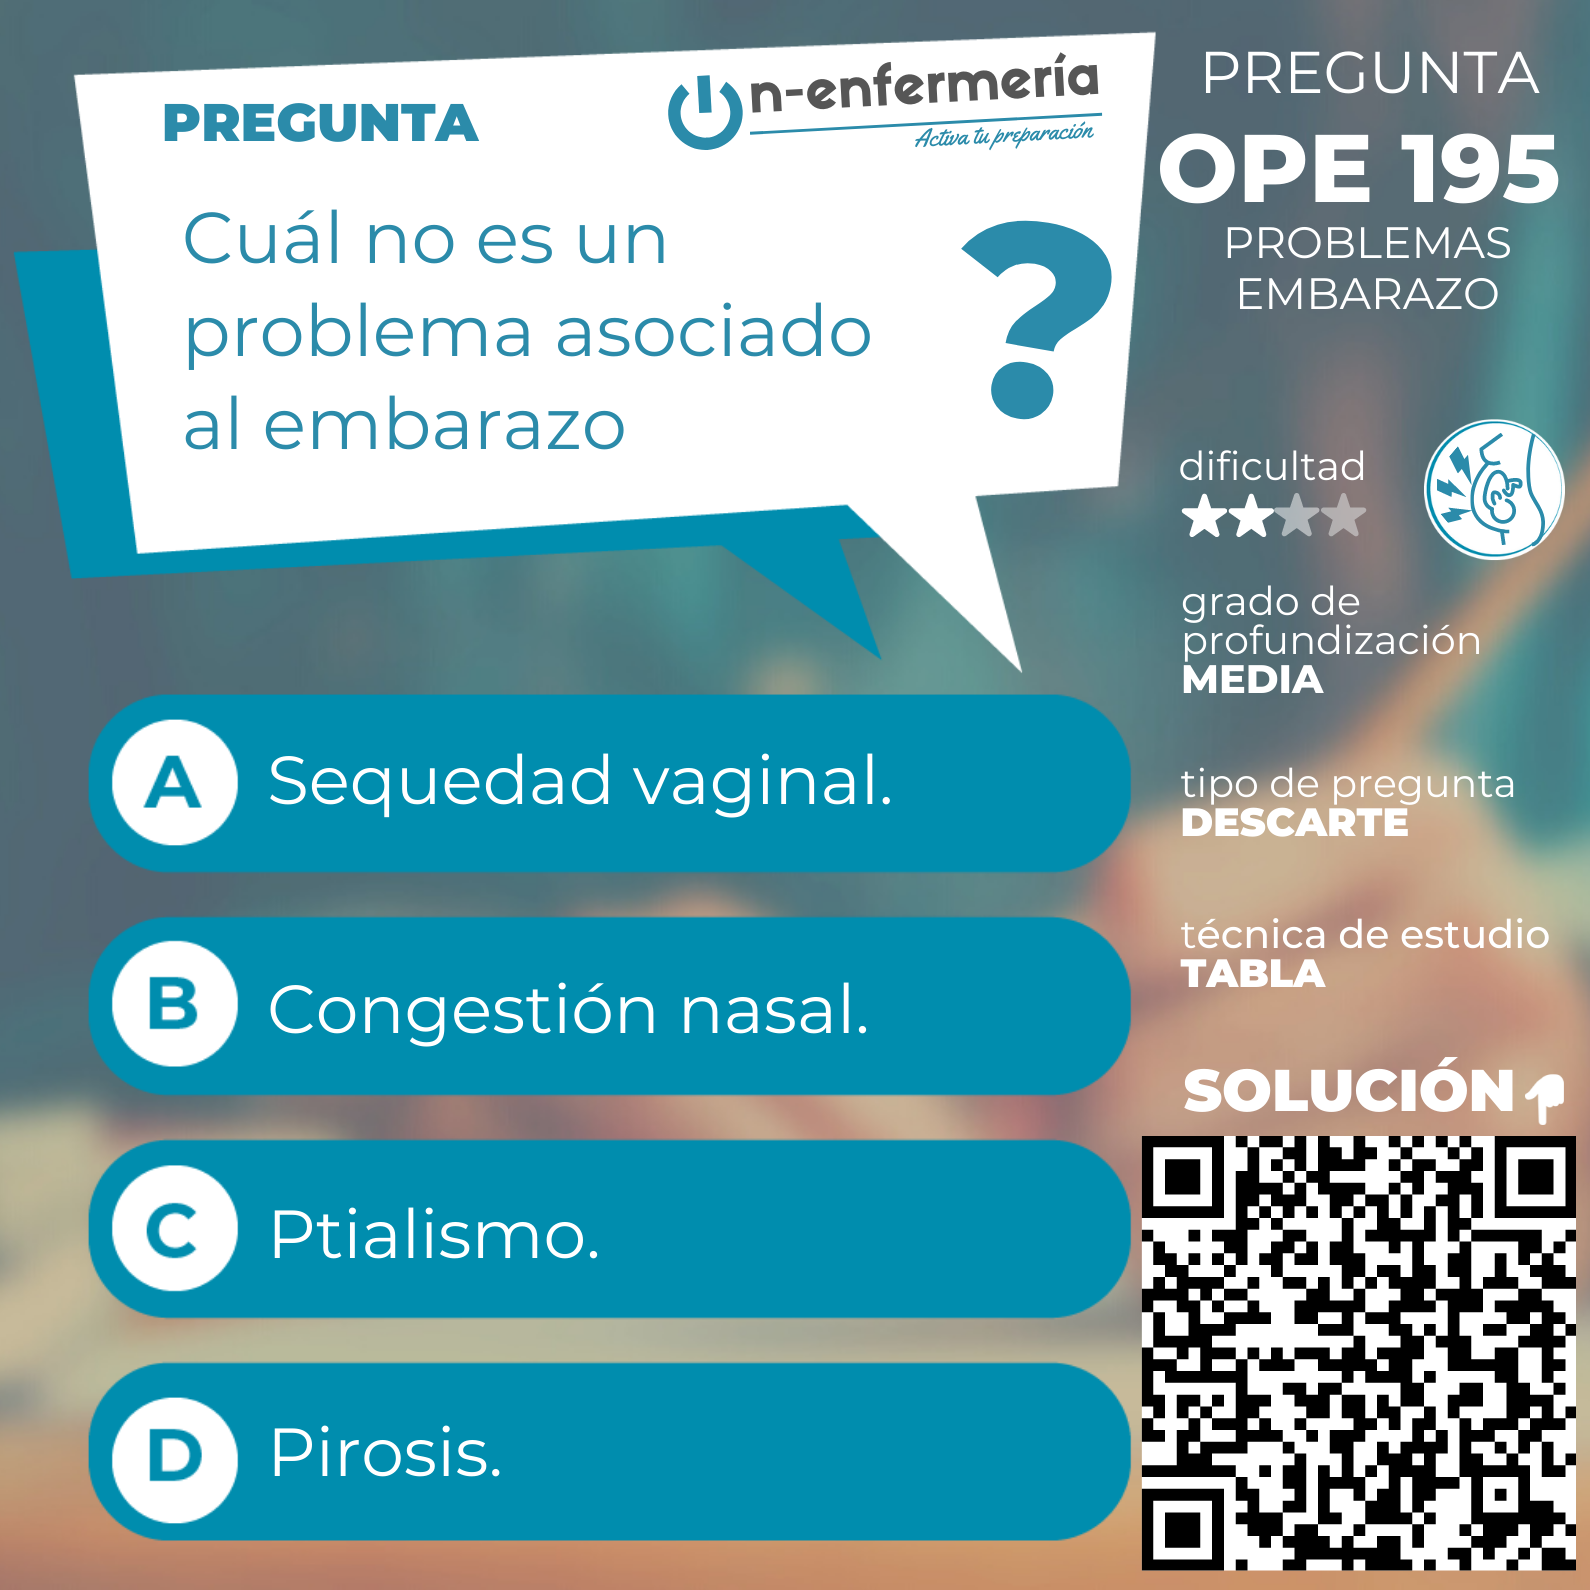 Pregunta examen OPE Enfermería nº 195 Problemas embarazo - Mujer gestante